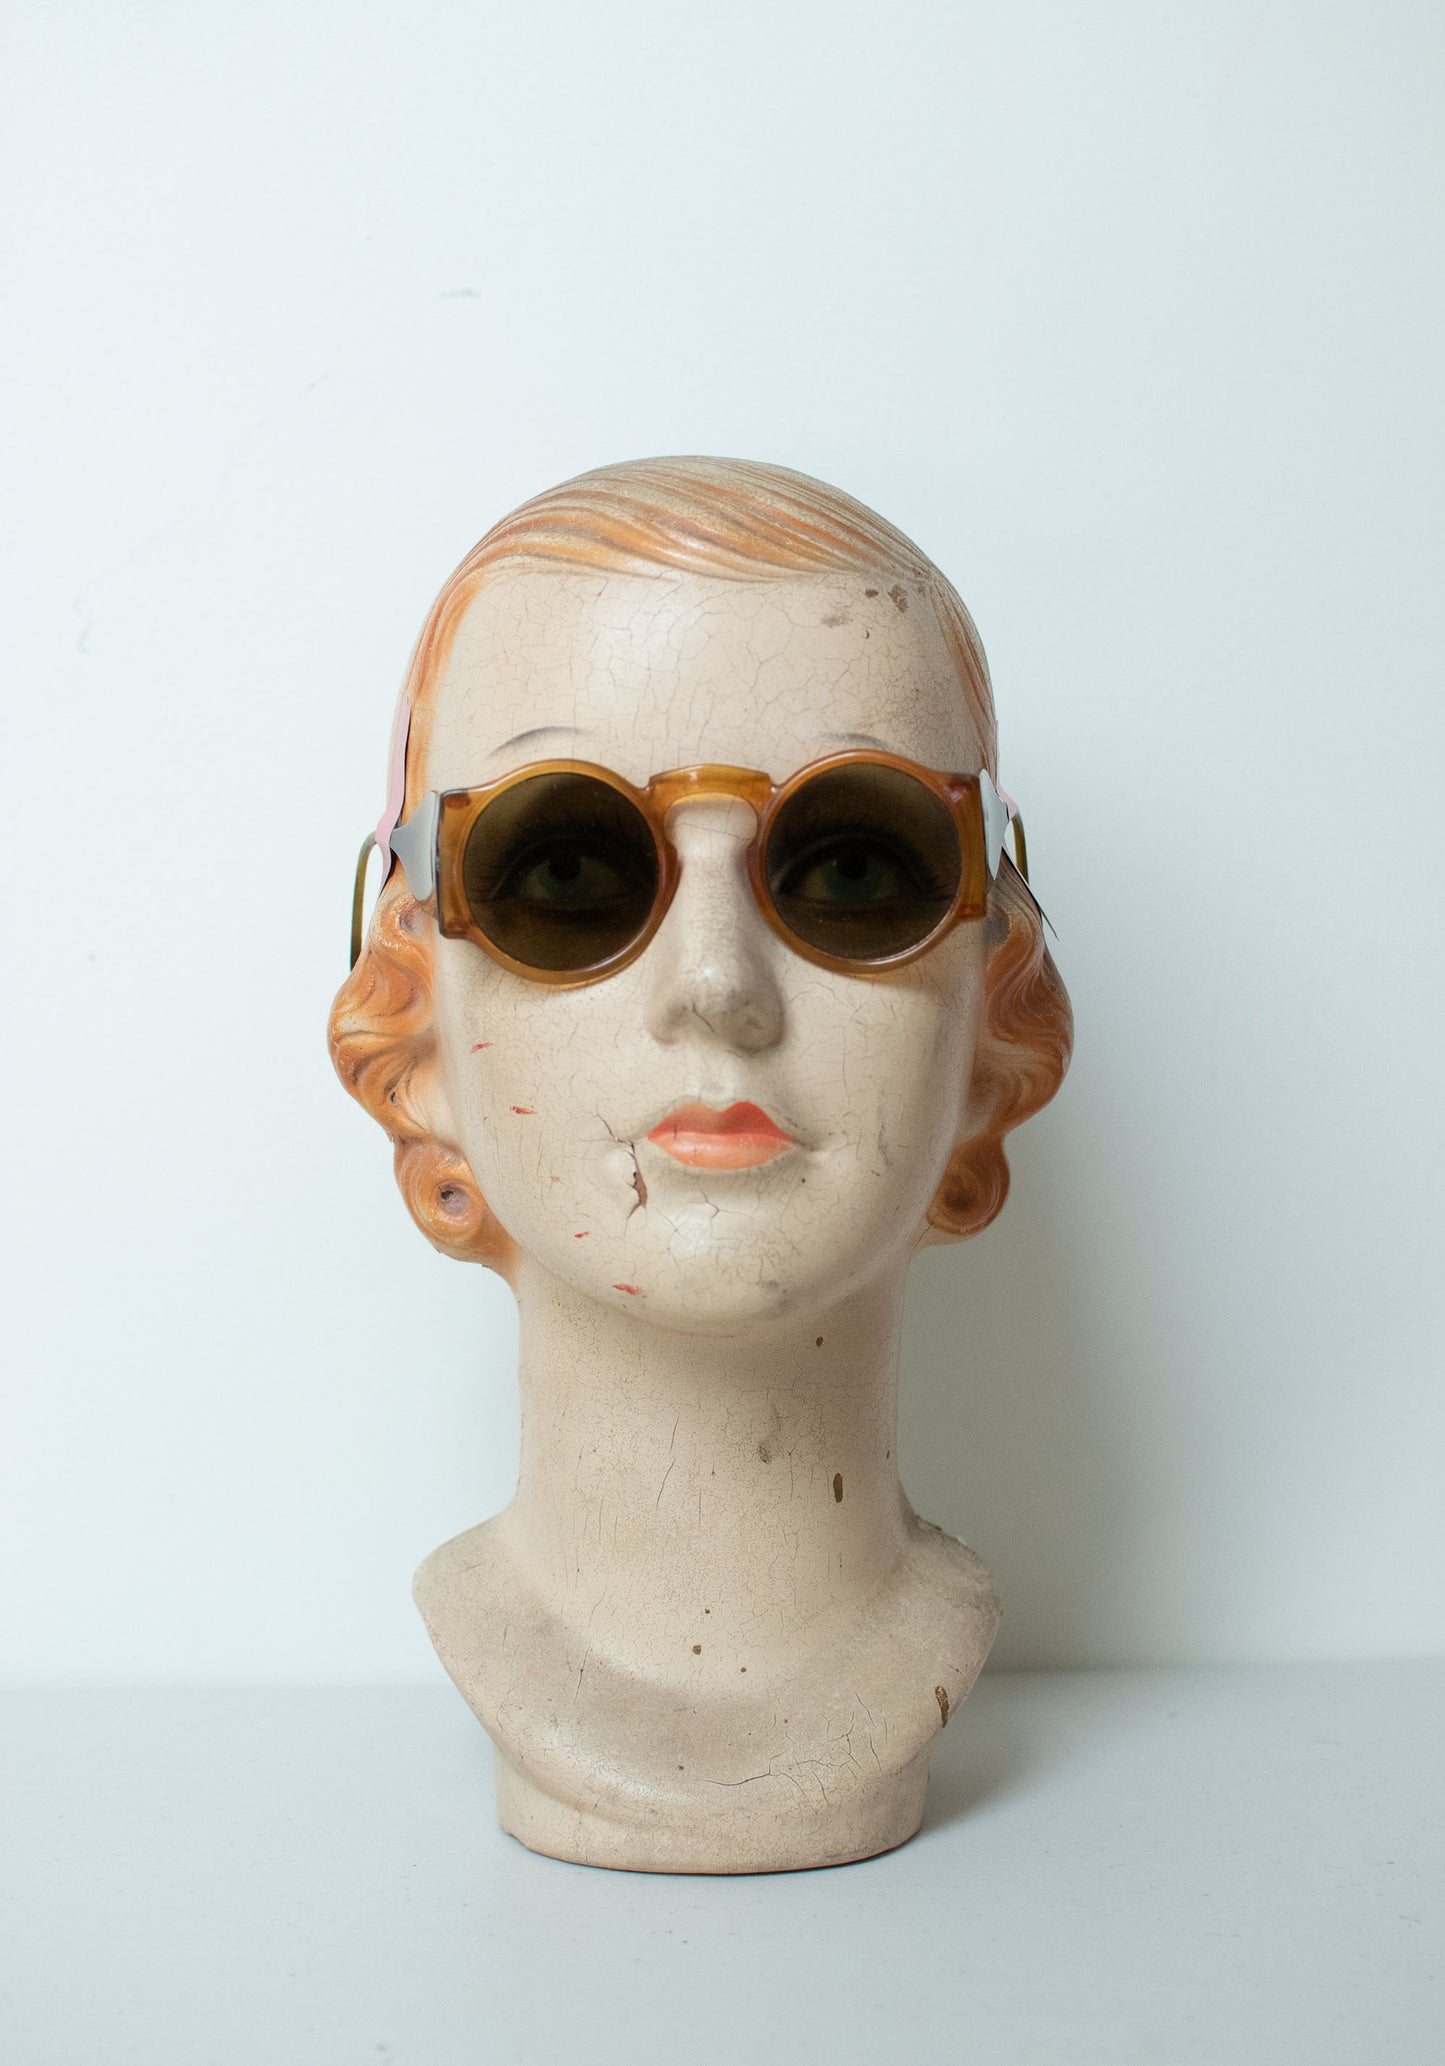 1940s Blinkers Sunglasses